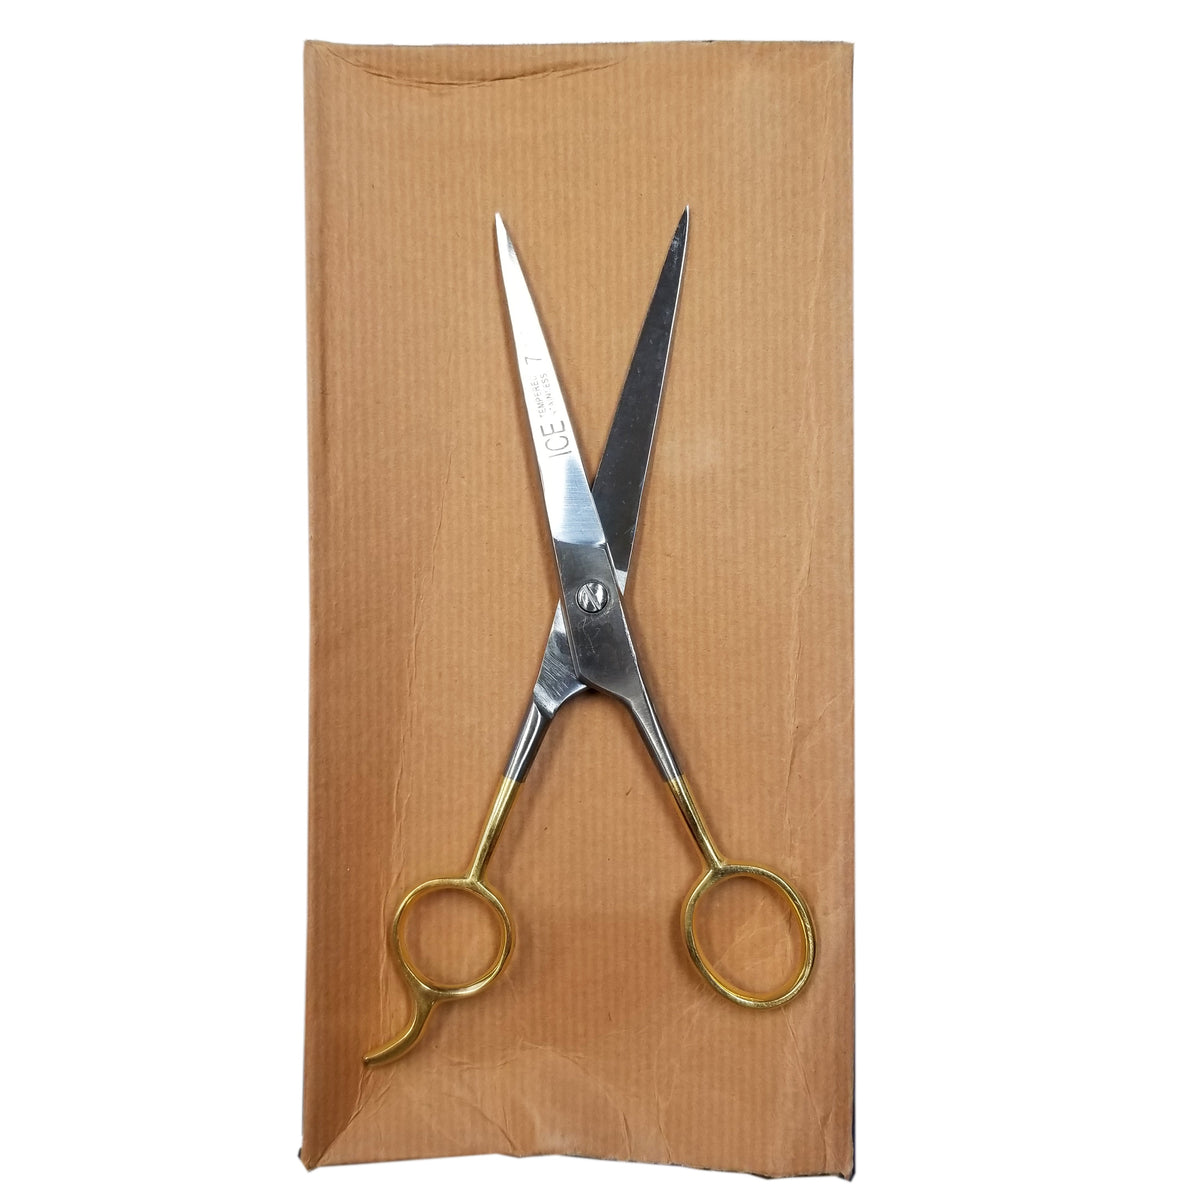 7 Gold-Handled Trim Scissors